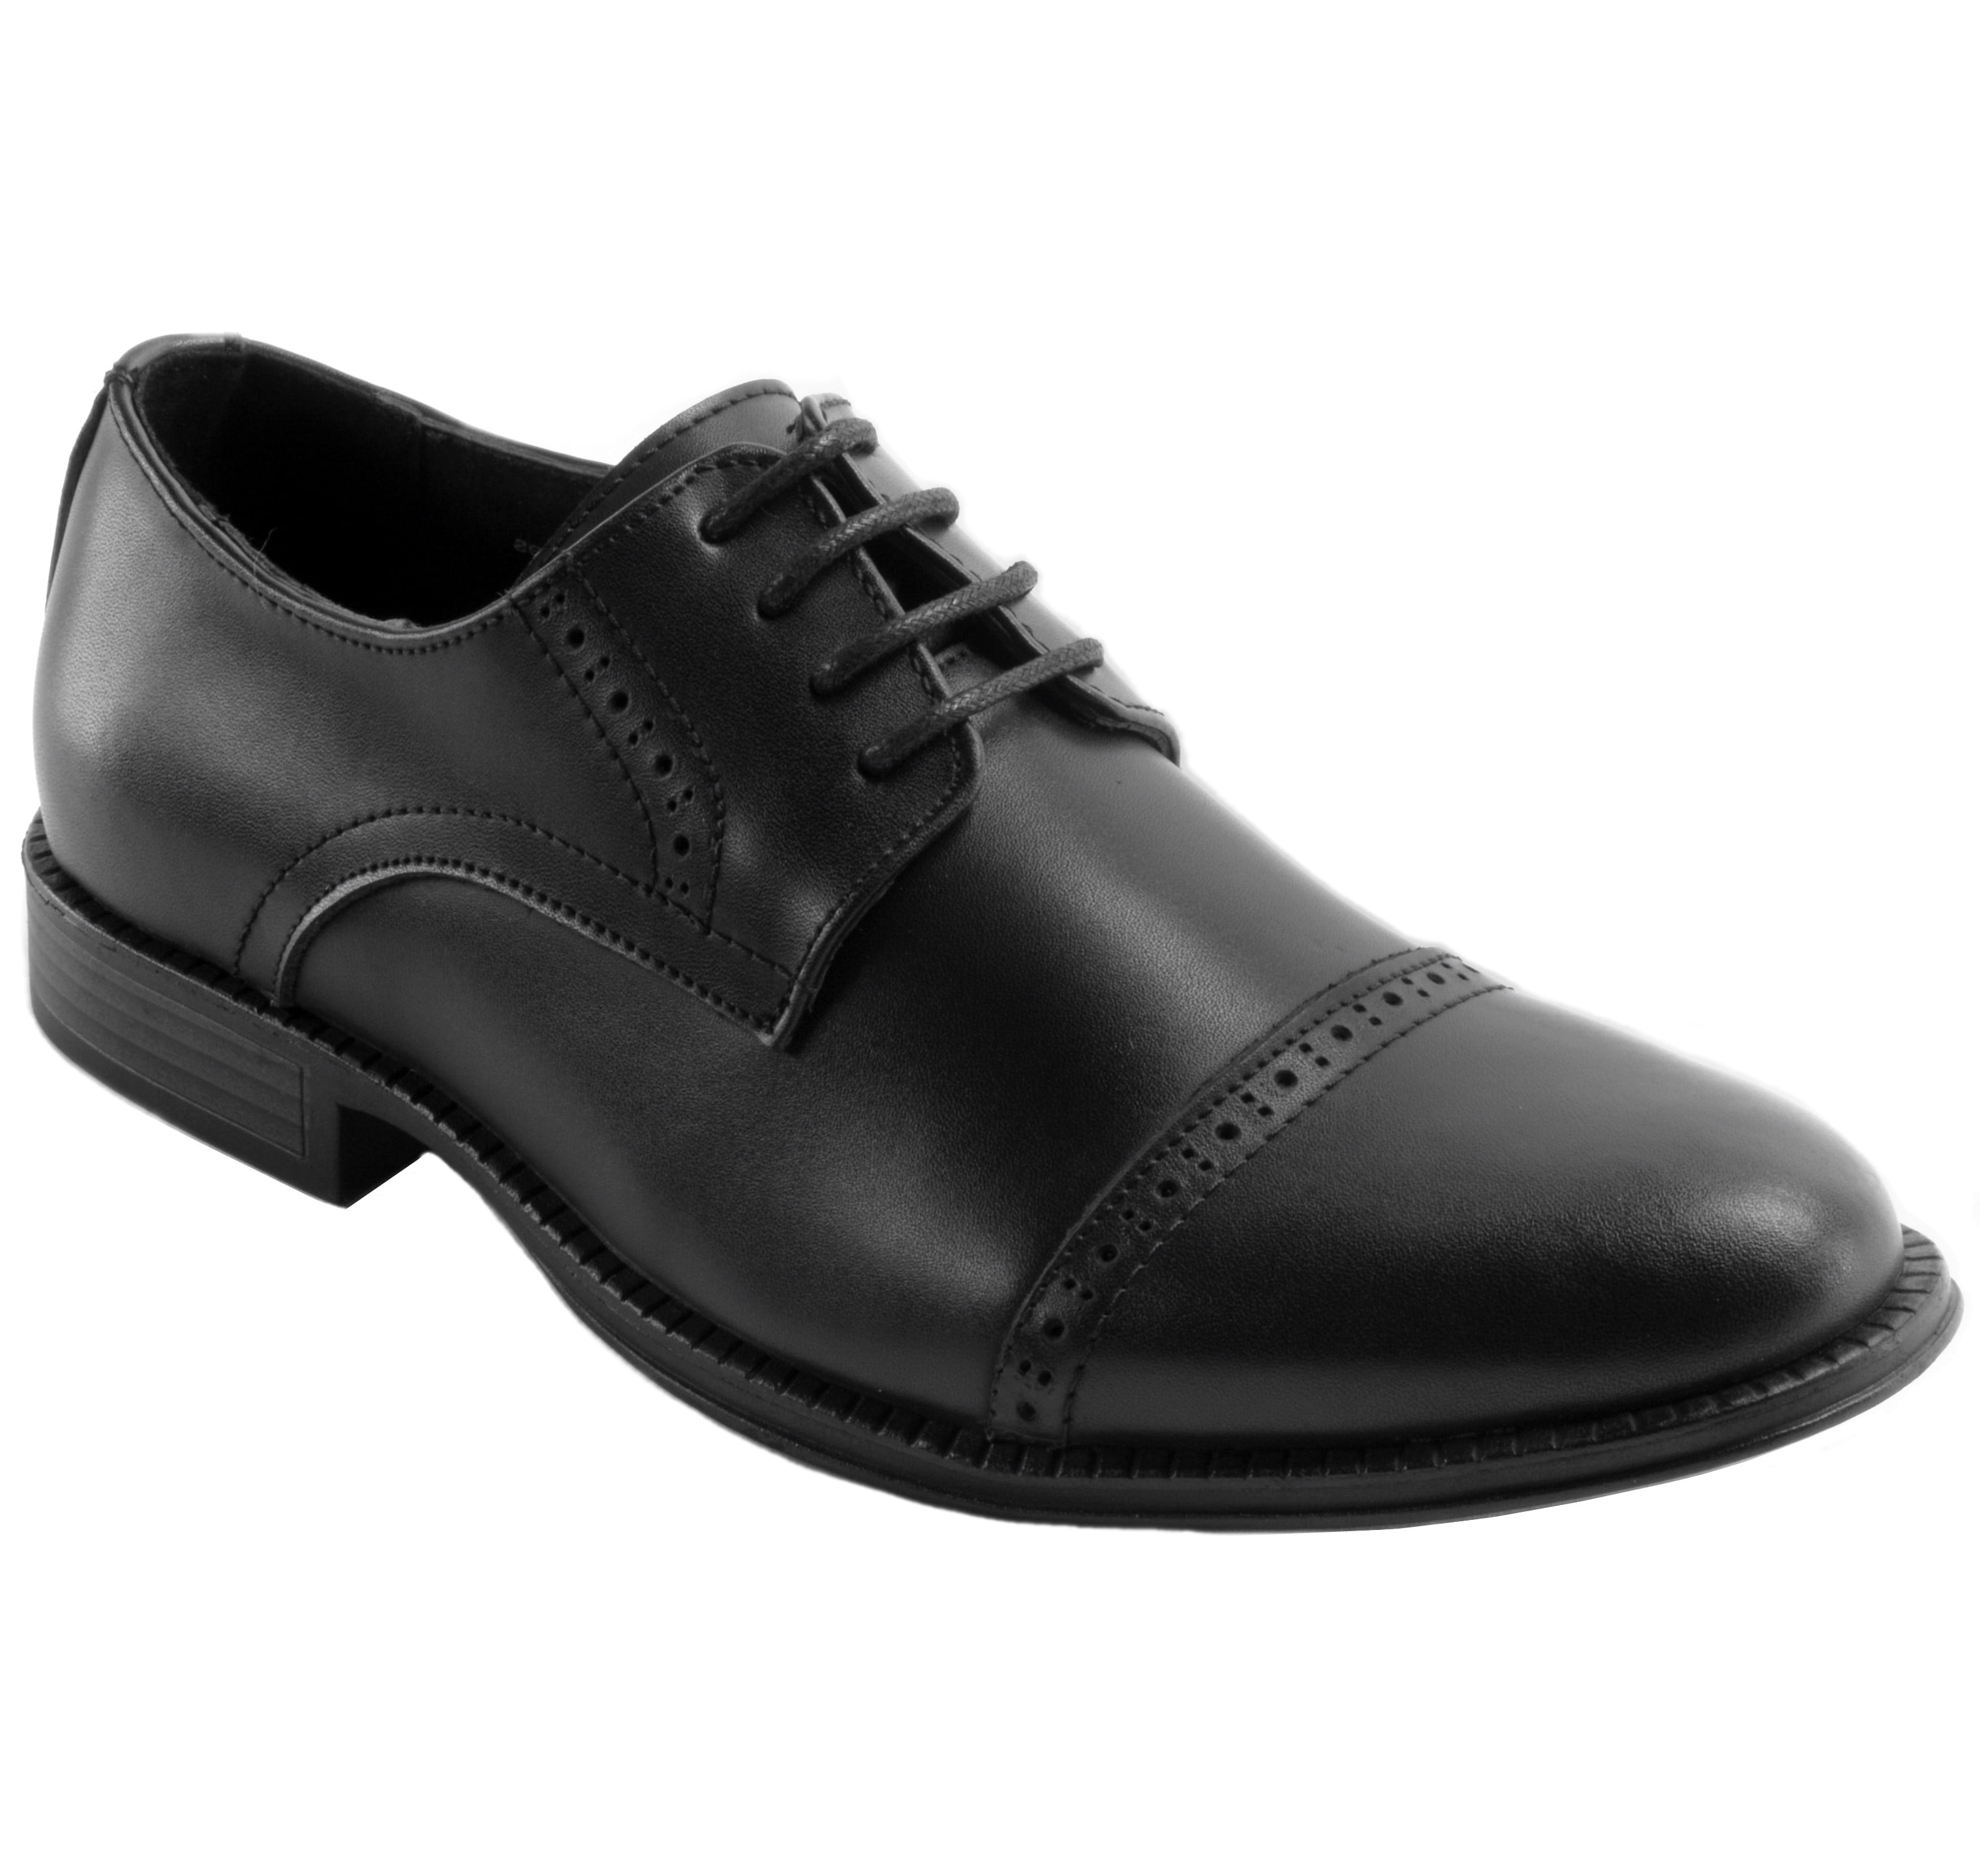 Men's Black Cap Toe Lace Up Oxford Dress Shoes